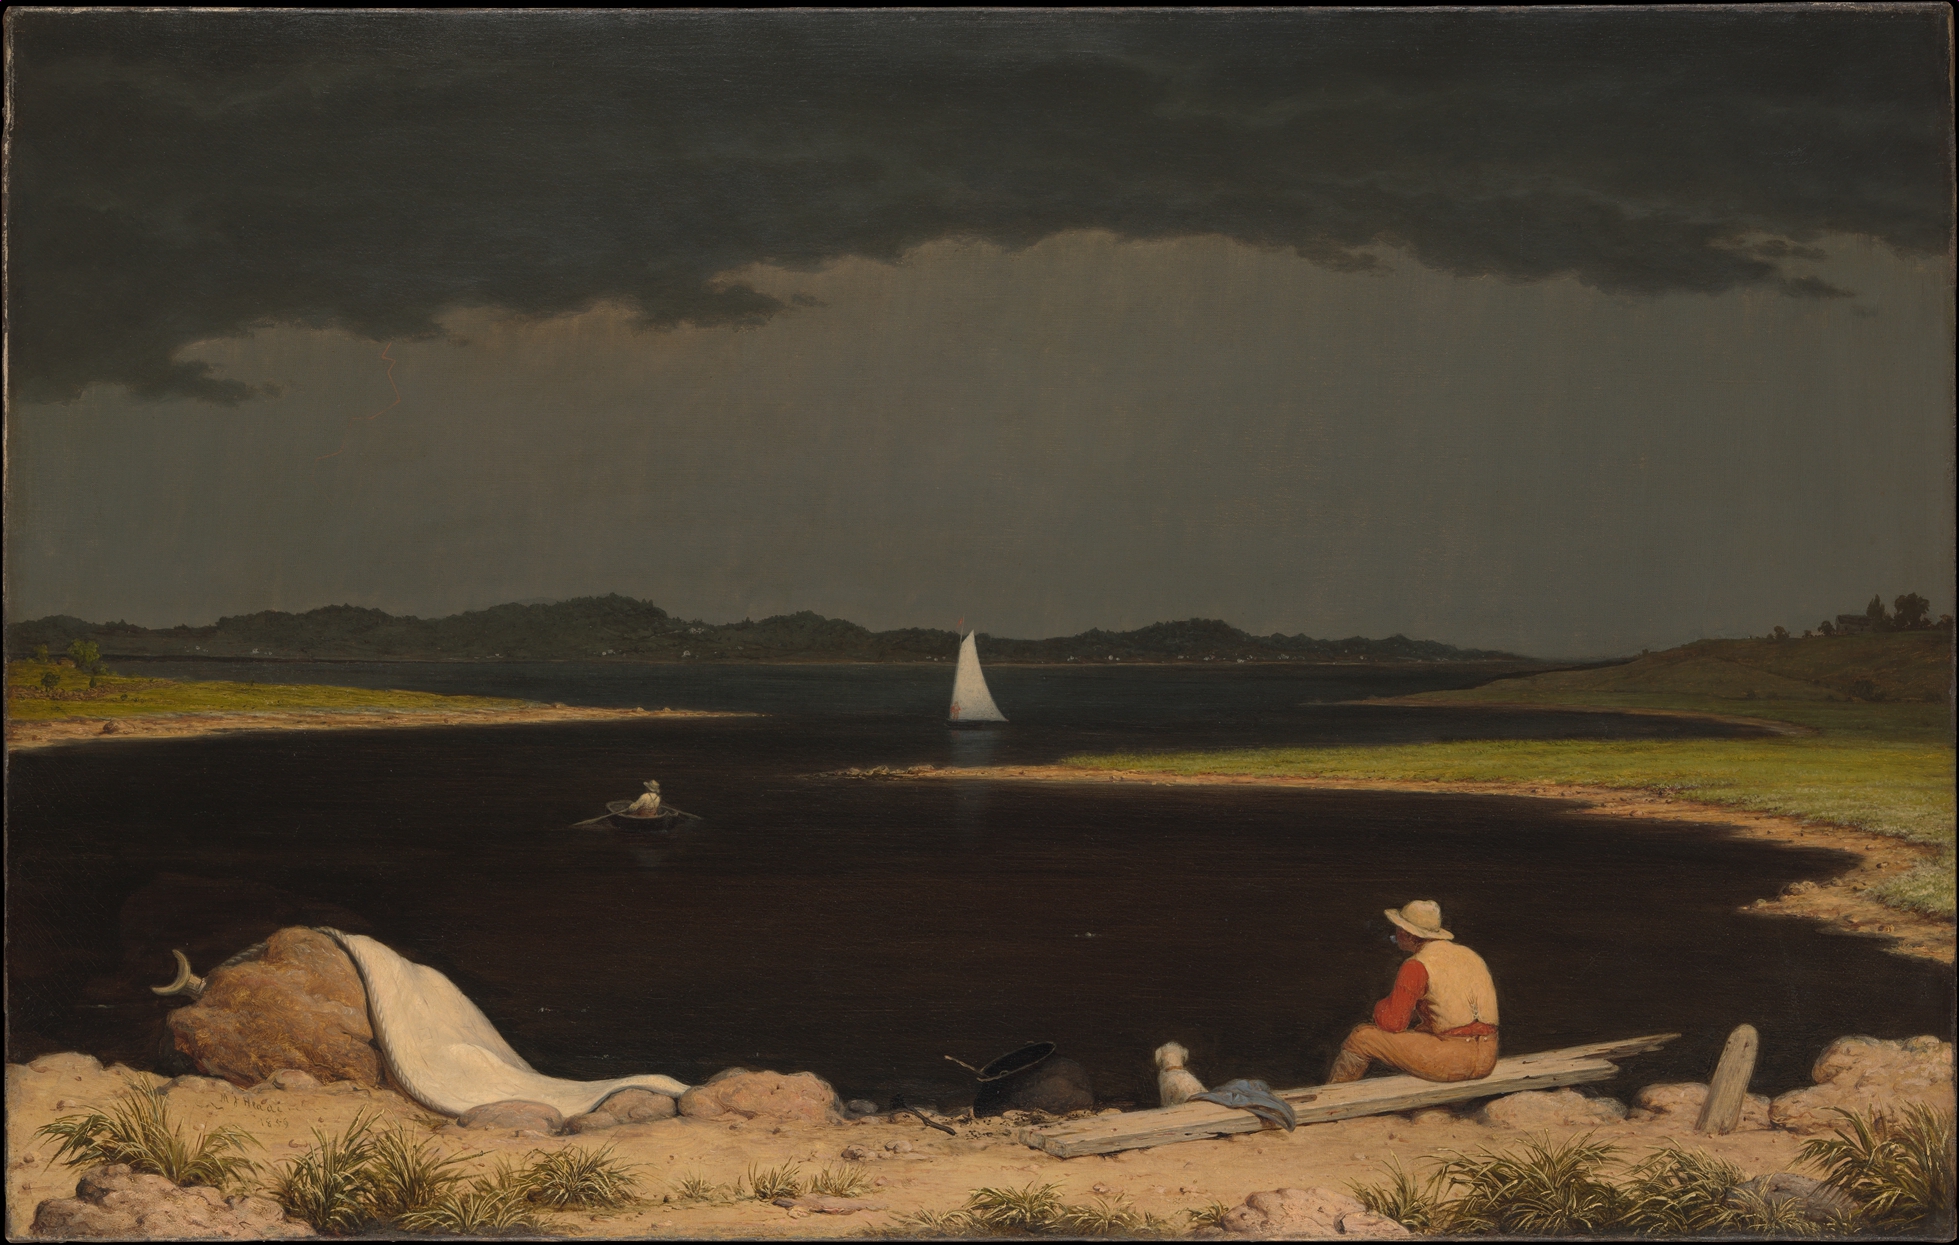 Yaklaşan Fırtına by Martin Johnson Heade - 1859 - 71.1 x 111.8cm 